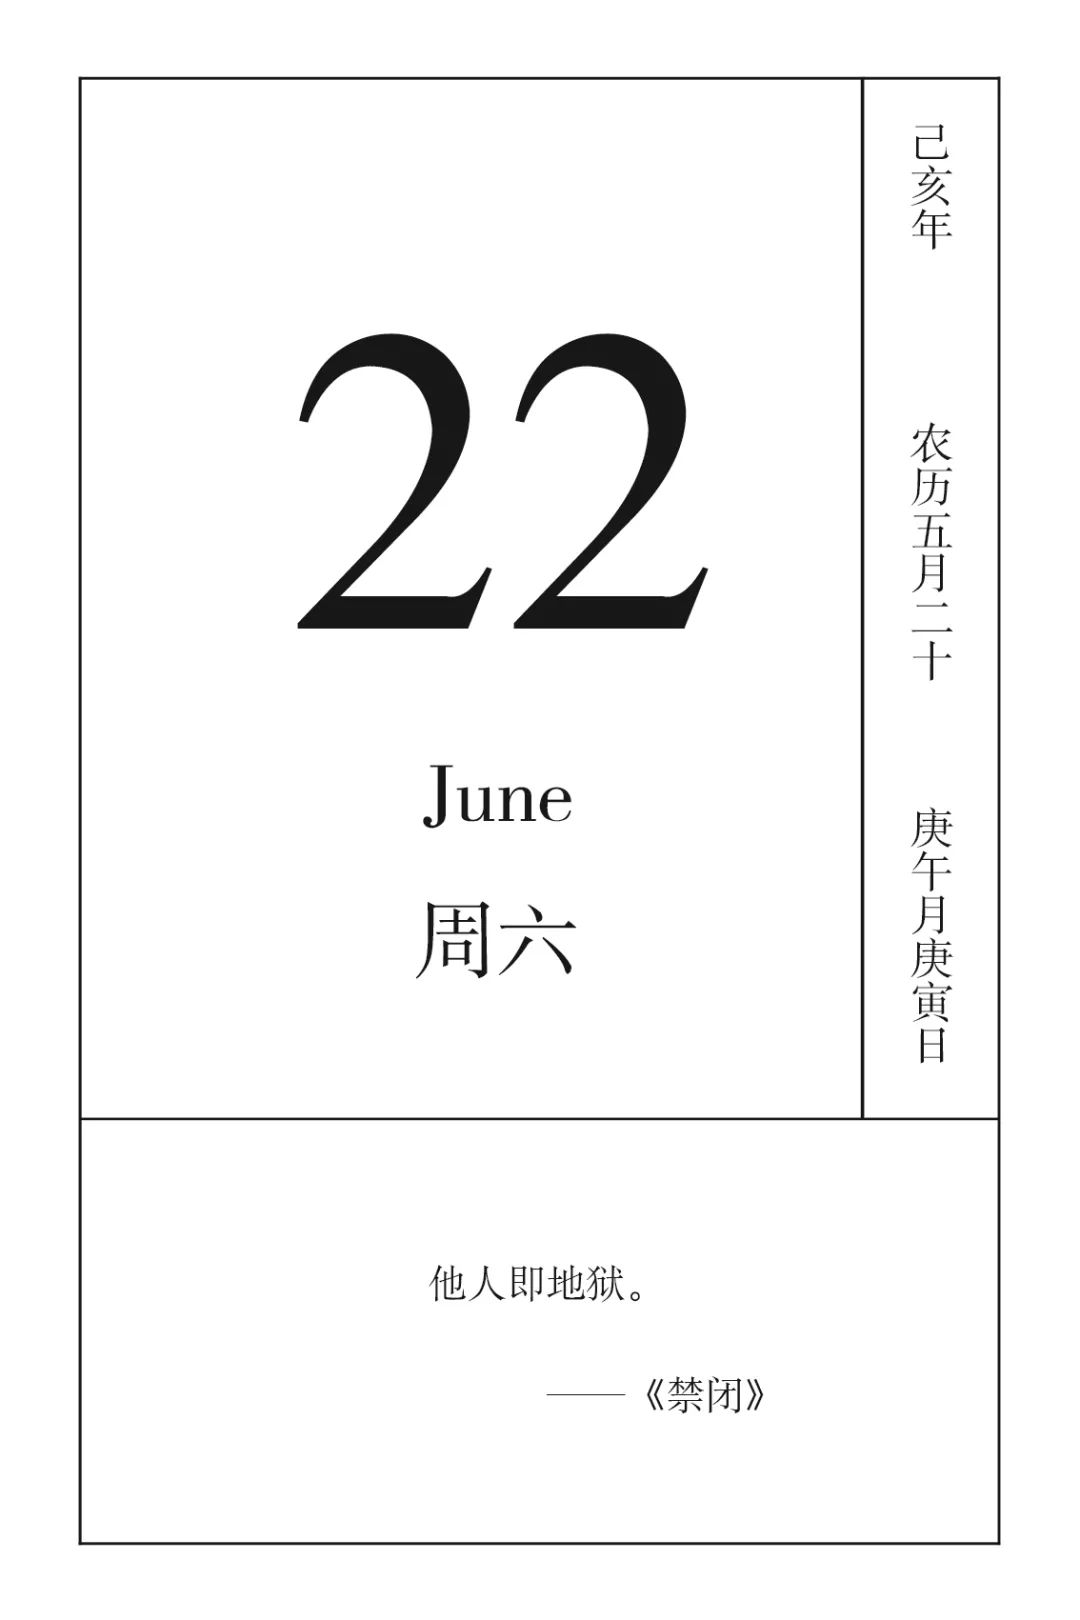 戏剧日历丨6月22日,做自己